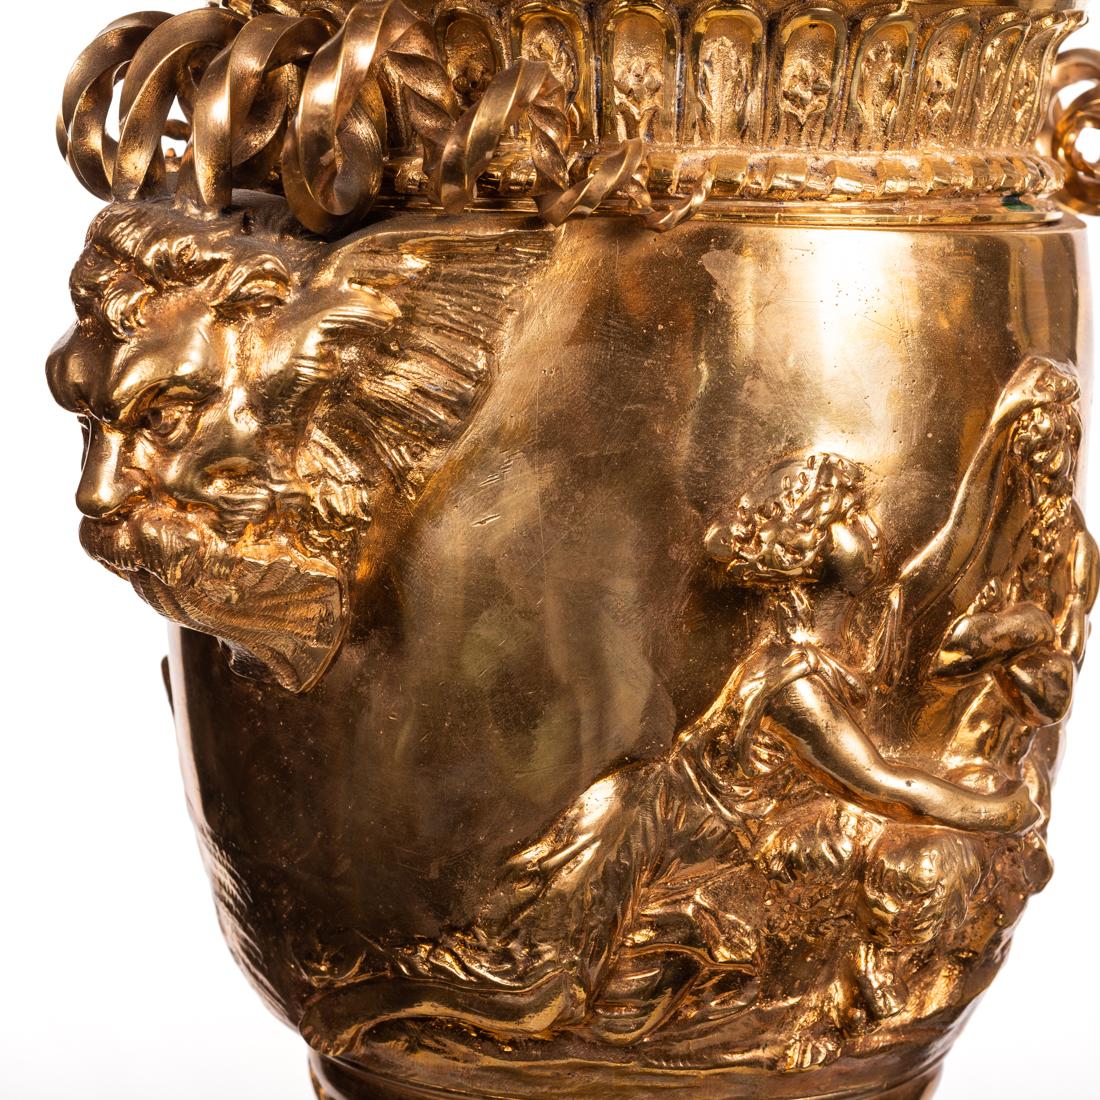 Vergoldete Bronze-Tischlampe in Form einer Urne,
nach der Antike, eine vergoldete Bronze-Tischlampe in Urnenform. 
Maße: Höhe 31 in. (78,74 cm.) (insgesamt) 
Breite 8 in. (20,32 cm.) 
Tiefe 7 in. (17,78 cm.)
 